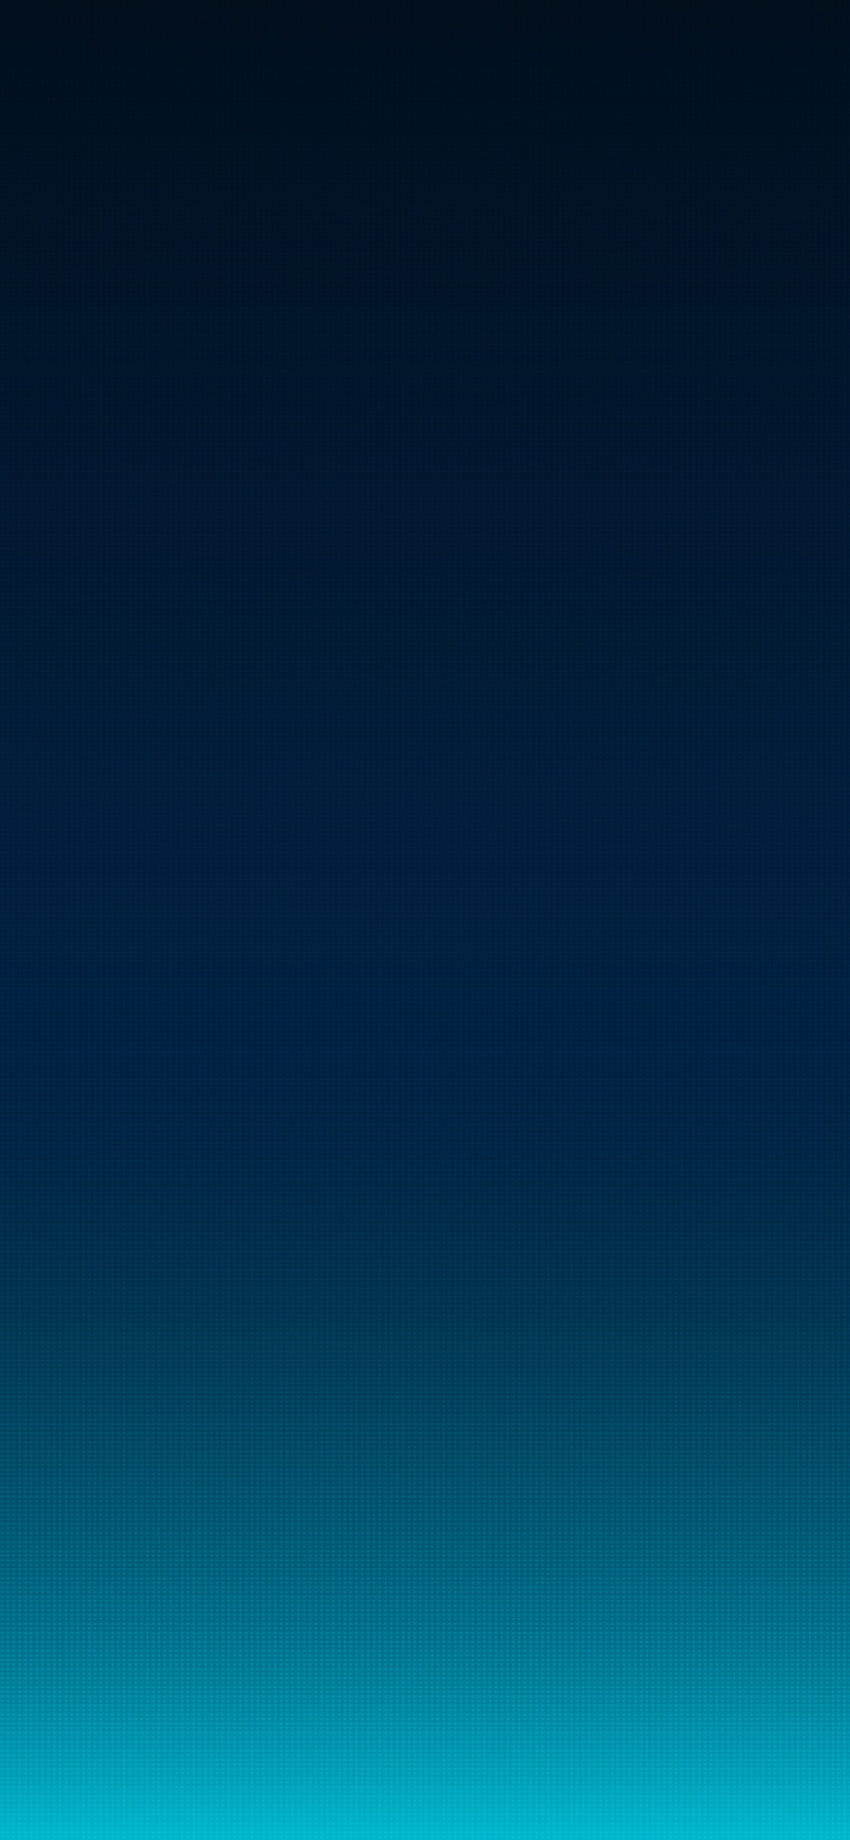 Dark Blue by @EvgeniyZemelko on Twitter, dark blue gradient android HD phone wallpaper